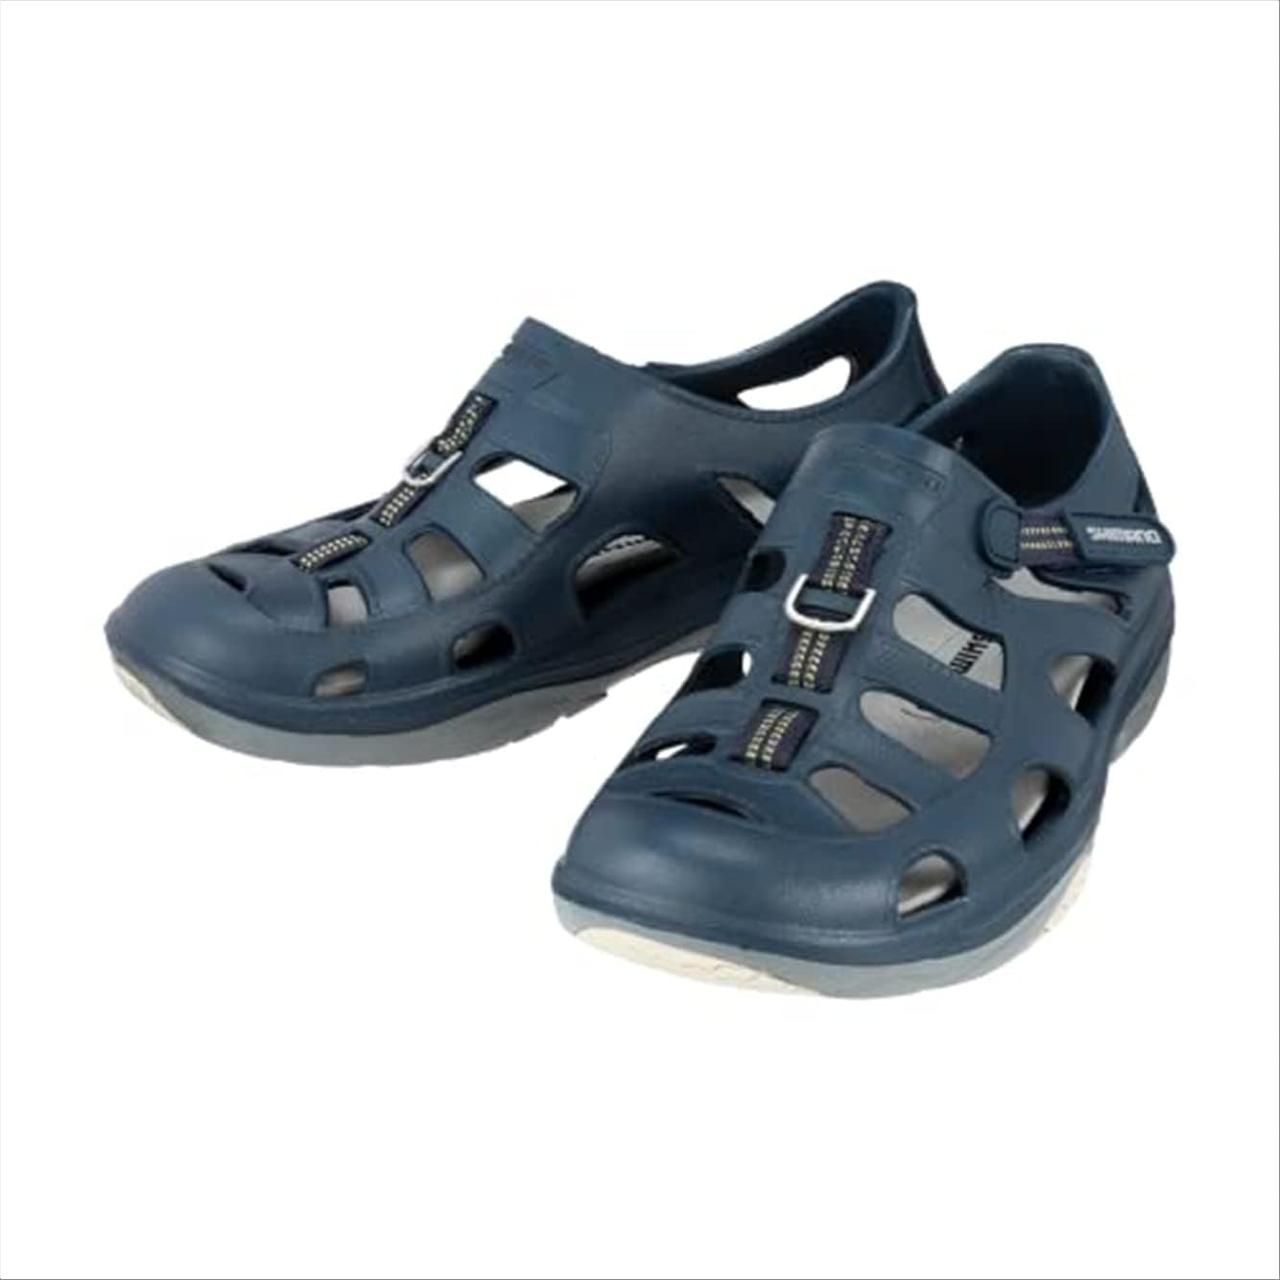 One Size Multi Взуття для морської риболовлі SHIMANO Evair; Розмір 09; Темносиній/Сірий